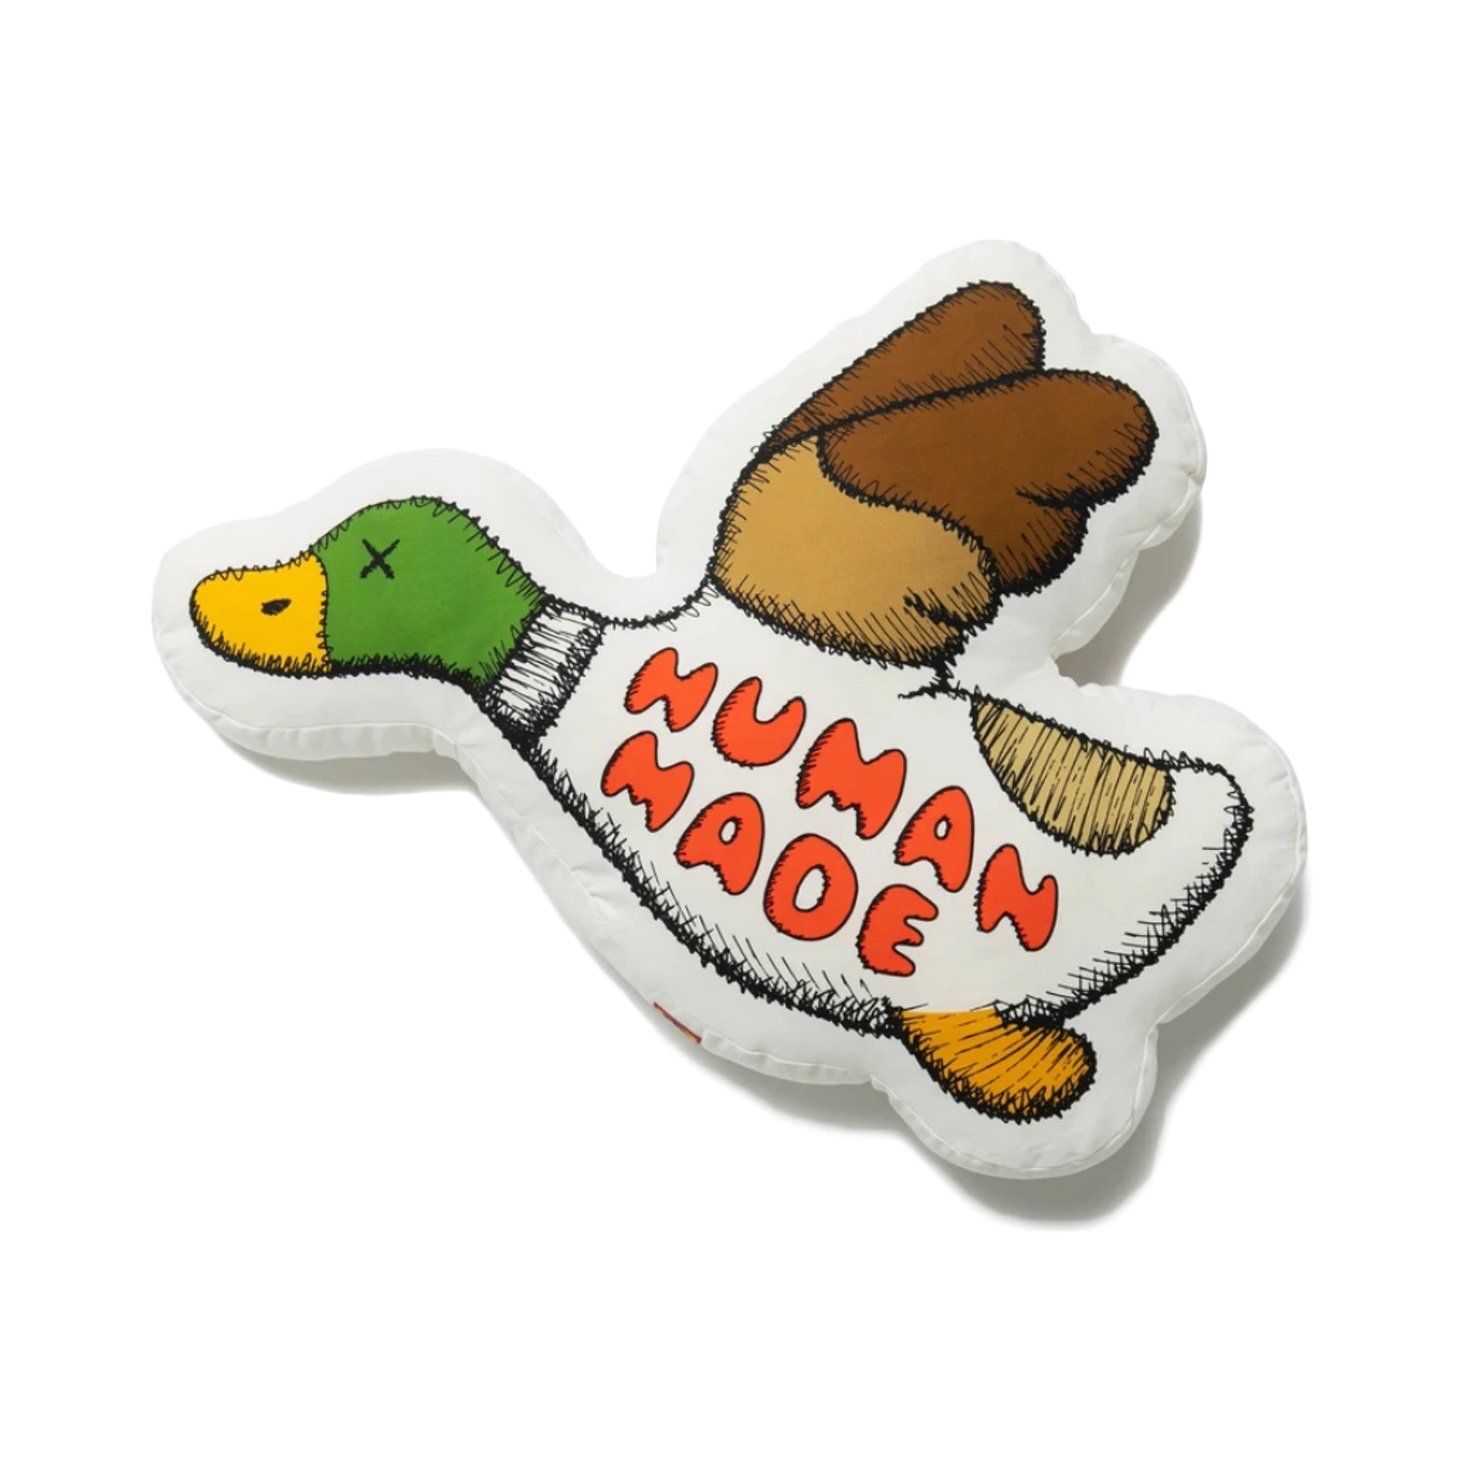  Human Made x Kaws Cushion Duck 